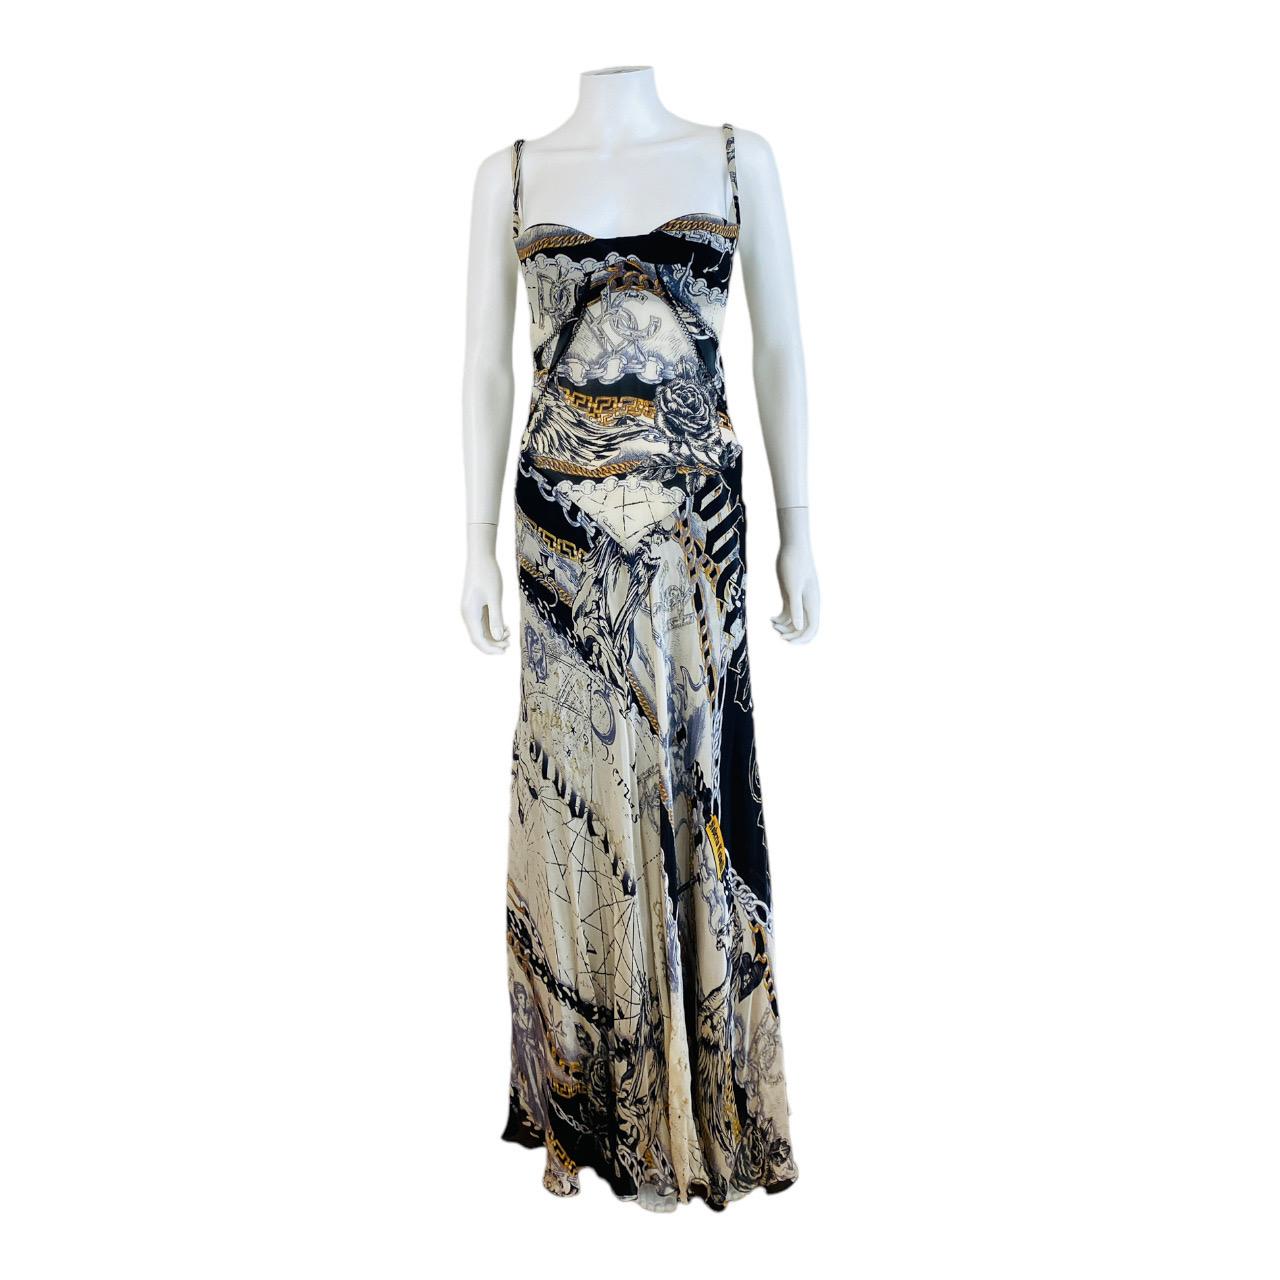 F/W 2003 Roberto Cavalli Silk Dress Gown
Beautiful 